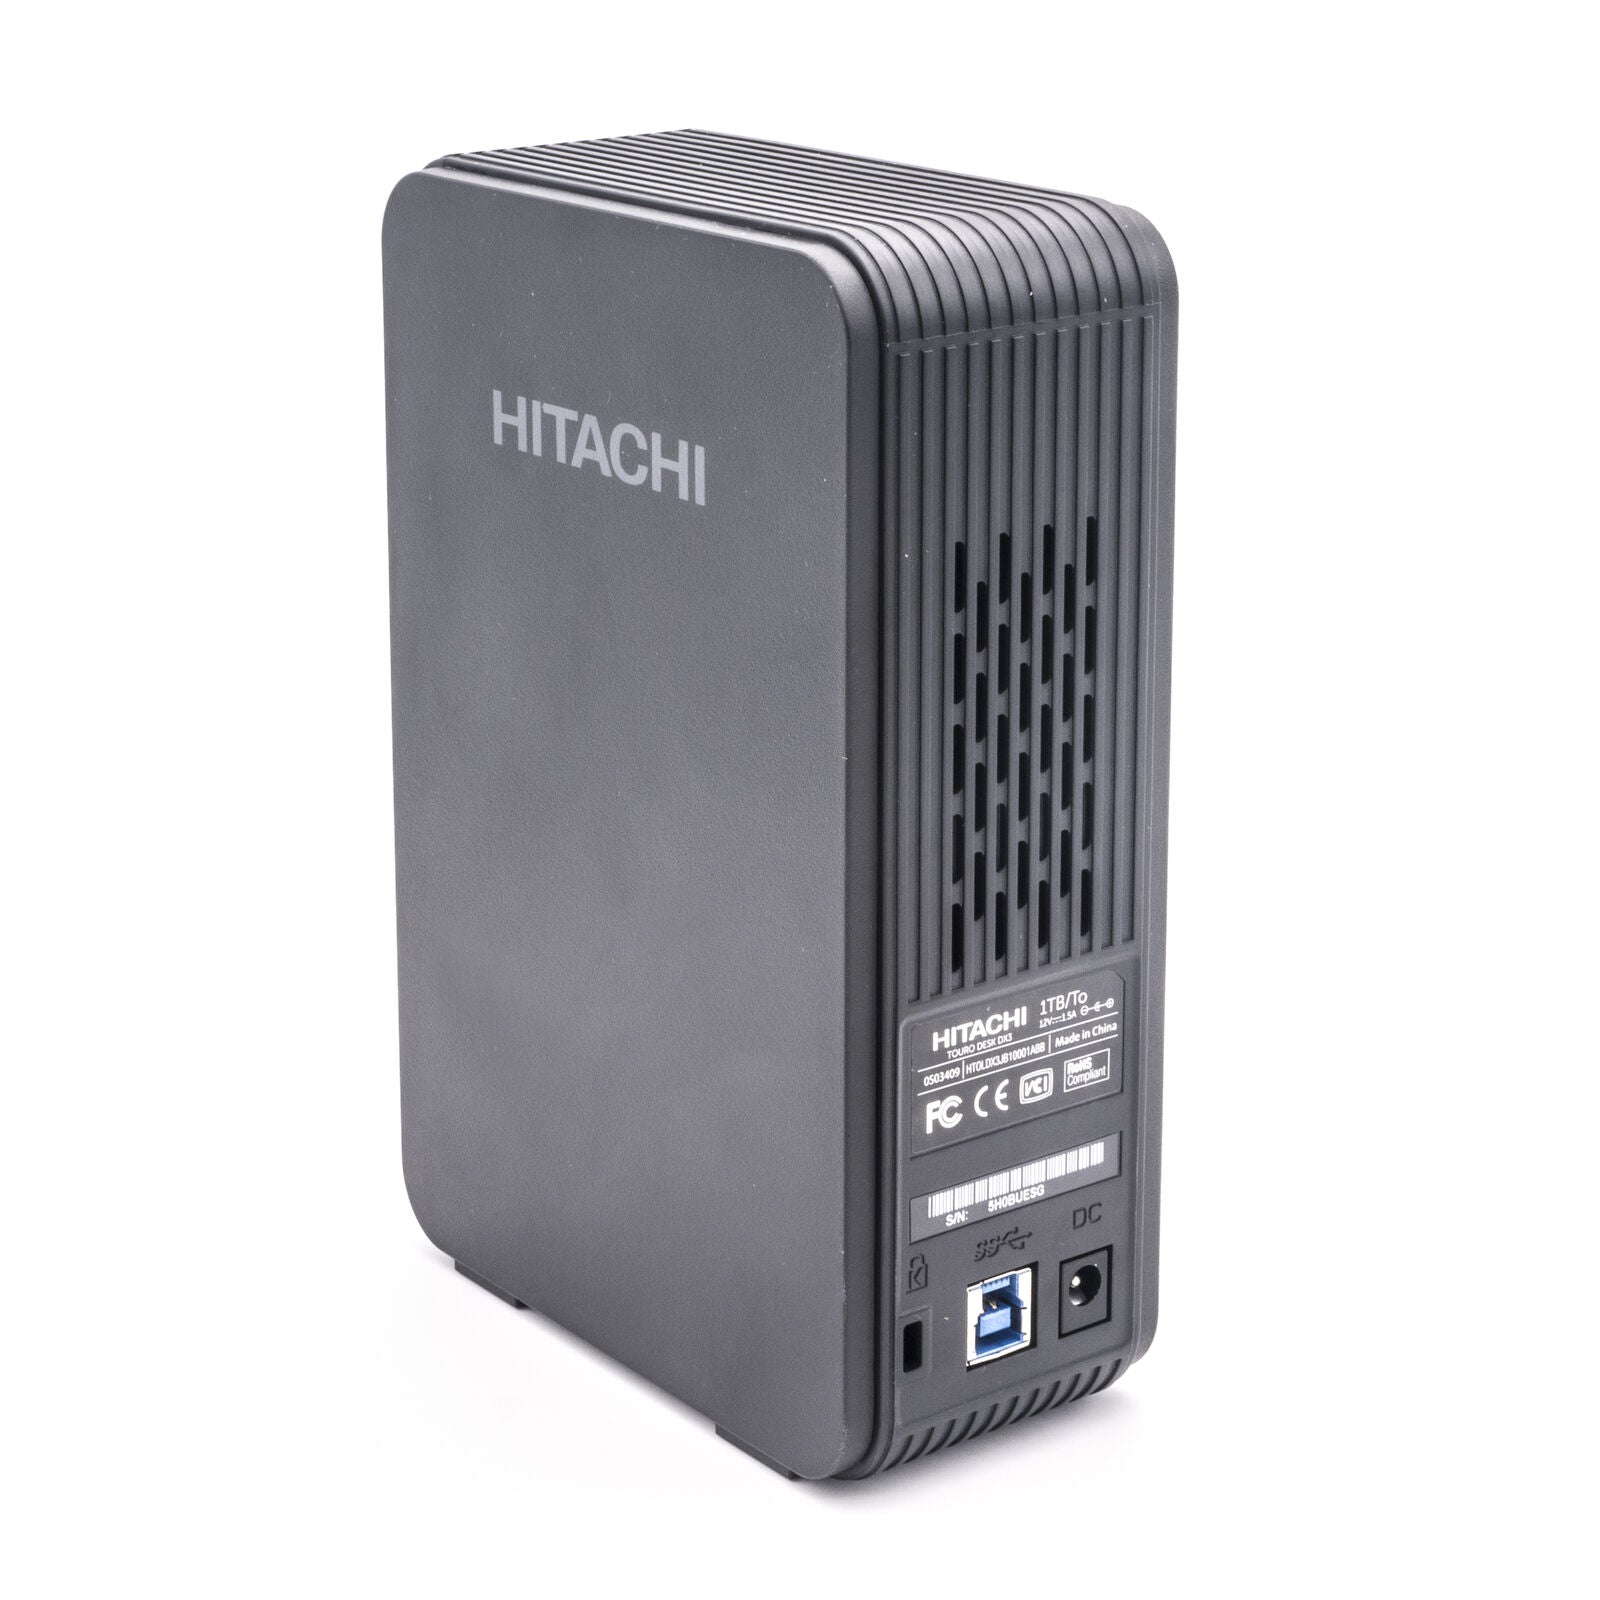 Hitachi 3.5" Touro Desk DX3 Portable External Hard Drive 1TB HDD For PC, Laptop